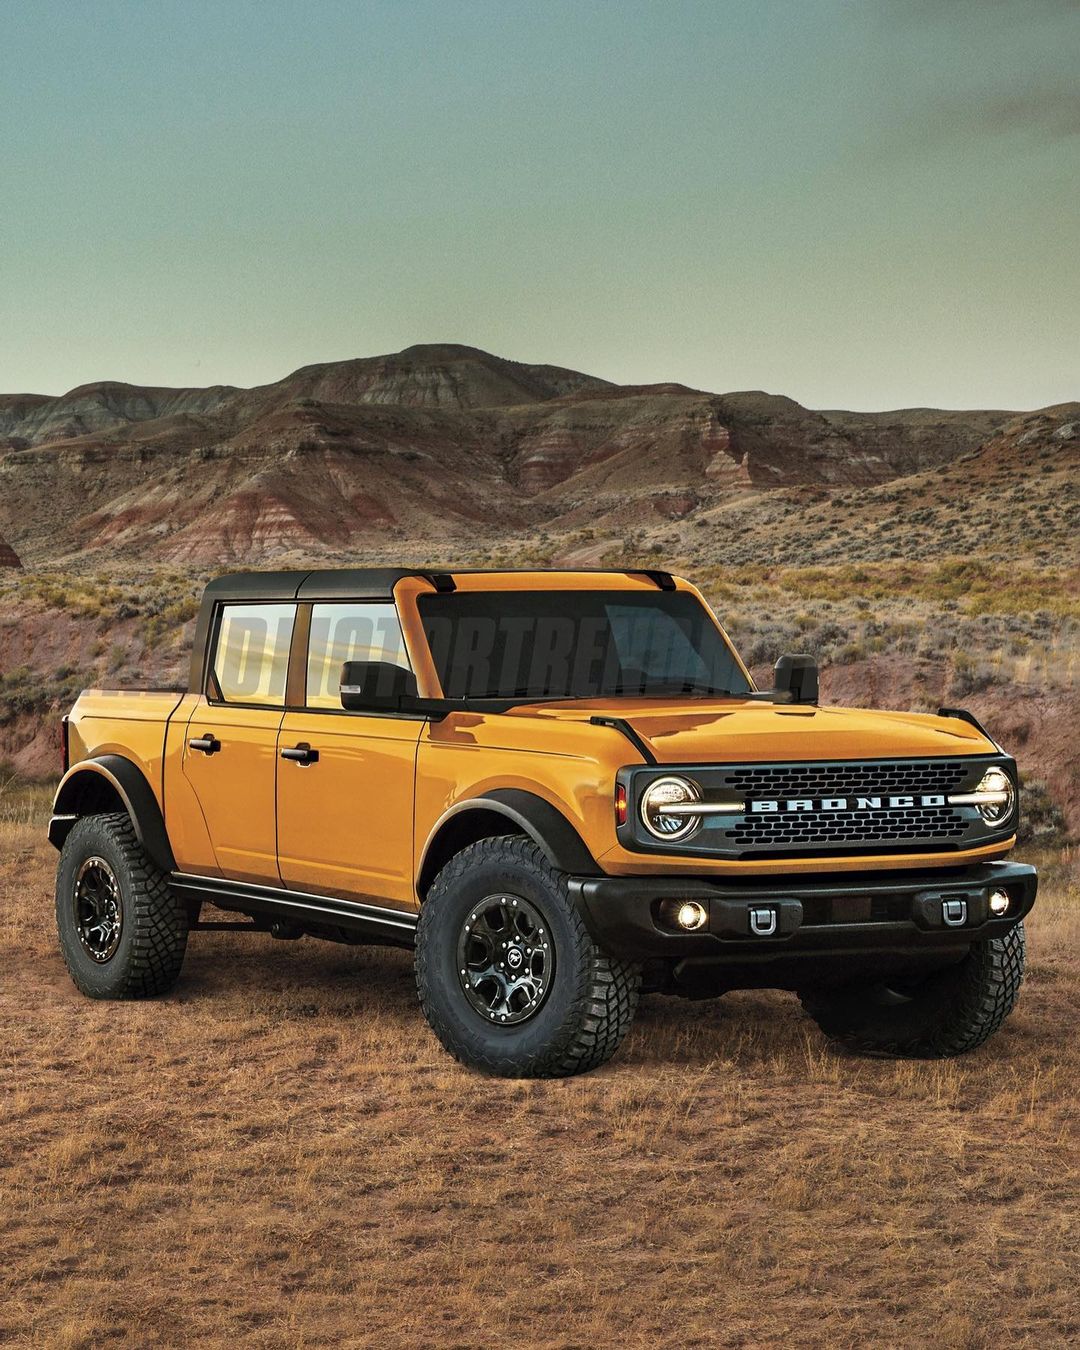 Ford đam mê làm bán tải: Ranger, Raptor, Maverick, F-series chưa đủ mà có thể còn là mẫu xe này nữa - Ảnh 3.